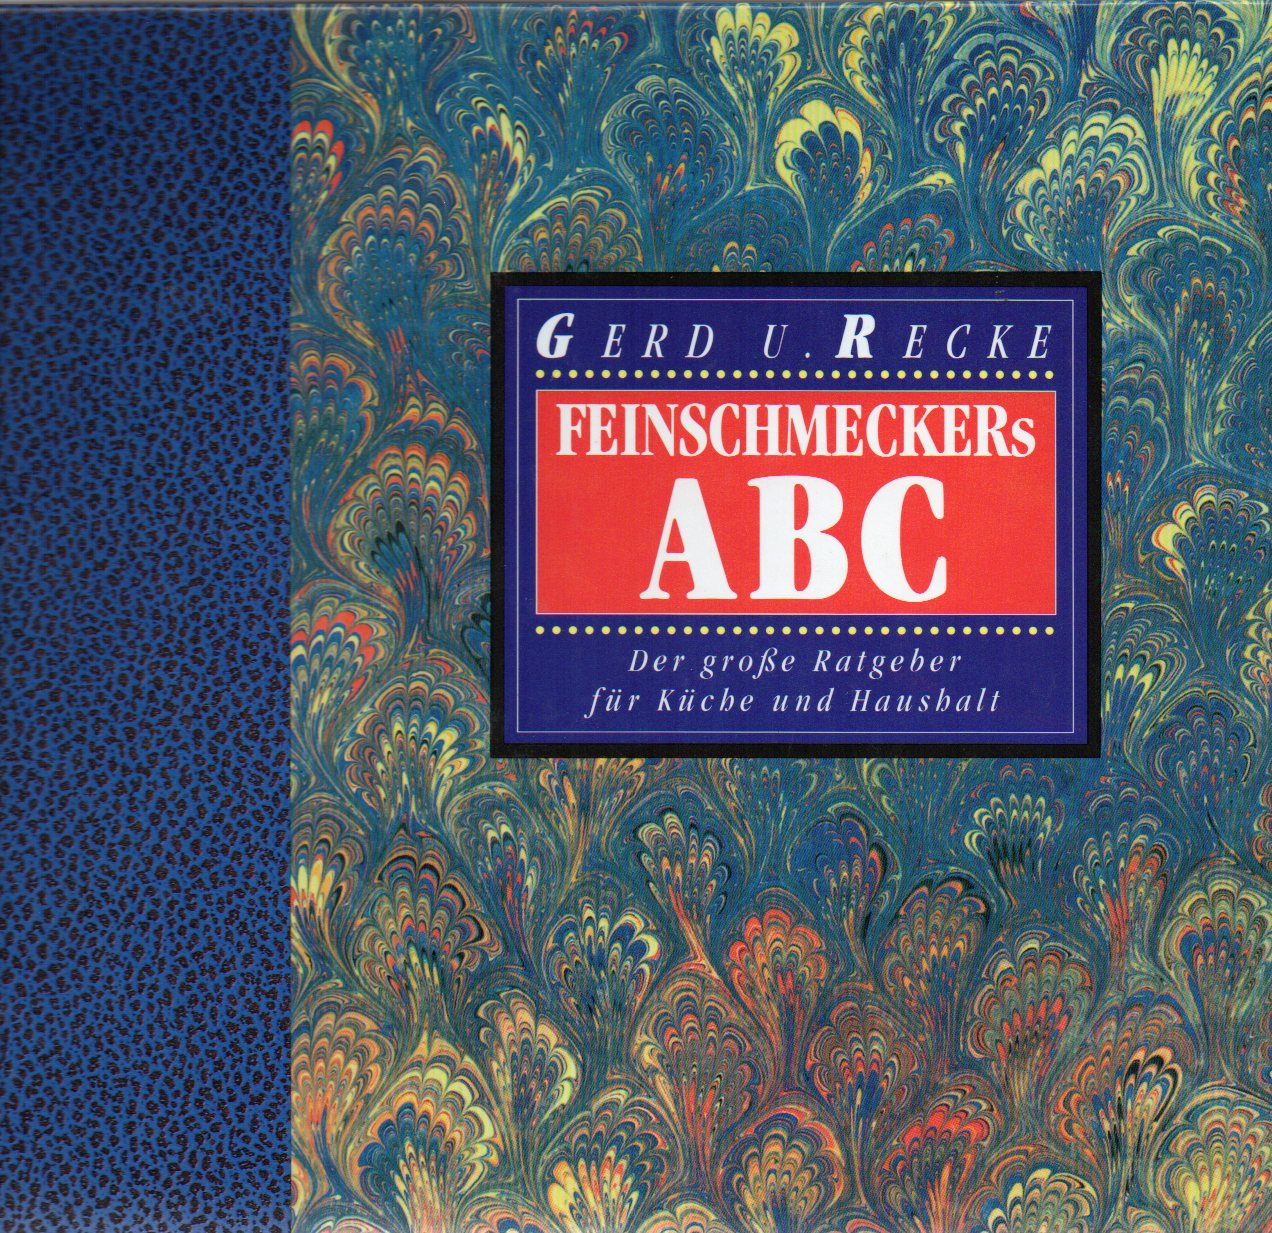 Recke,Gerd U.  Feinschmeckers ABC 